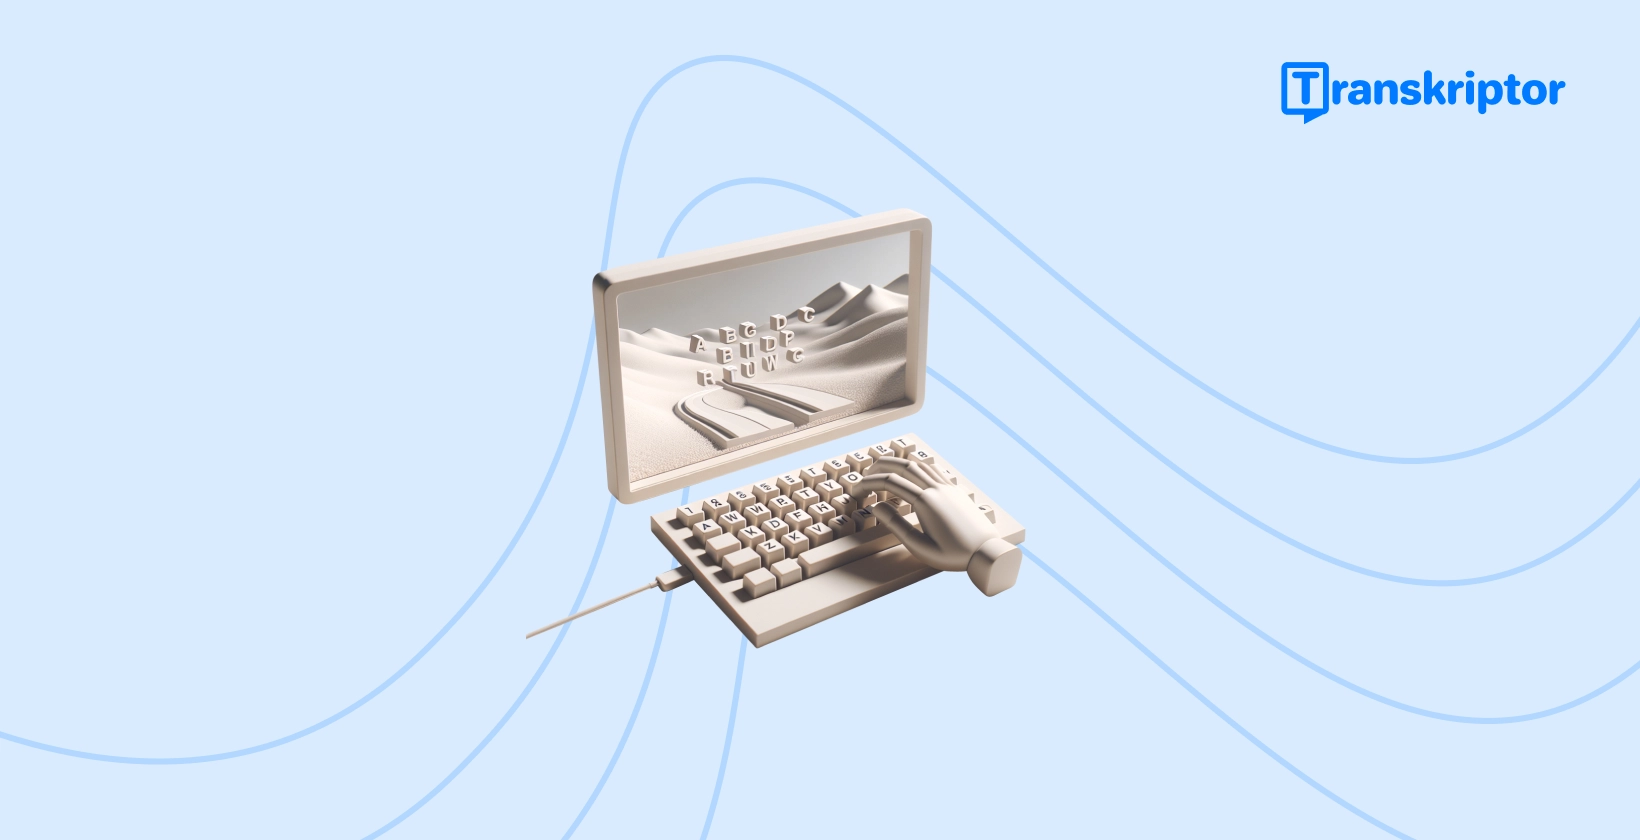 Vintage-kirjoituskone, jonka näppäimet muodostavat maiseman paperirullalleen, mikä edustaa luovaa prosessia, jossa TikTok videoihin lisätään kiinnostavia kuvatekstejä.